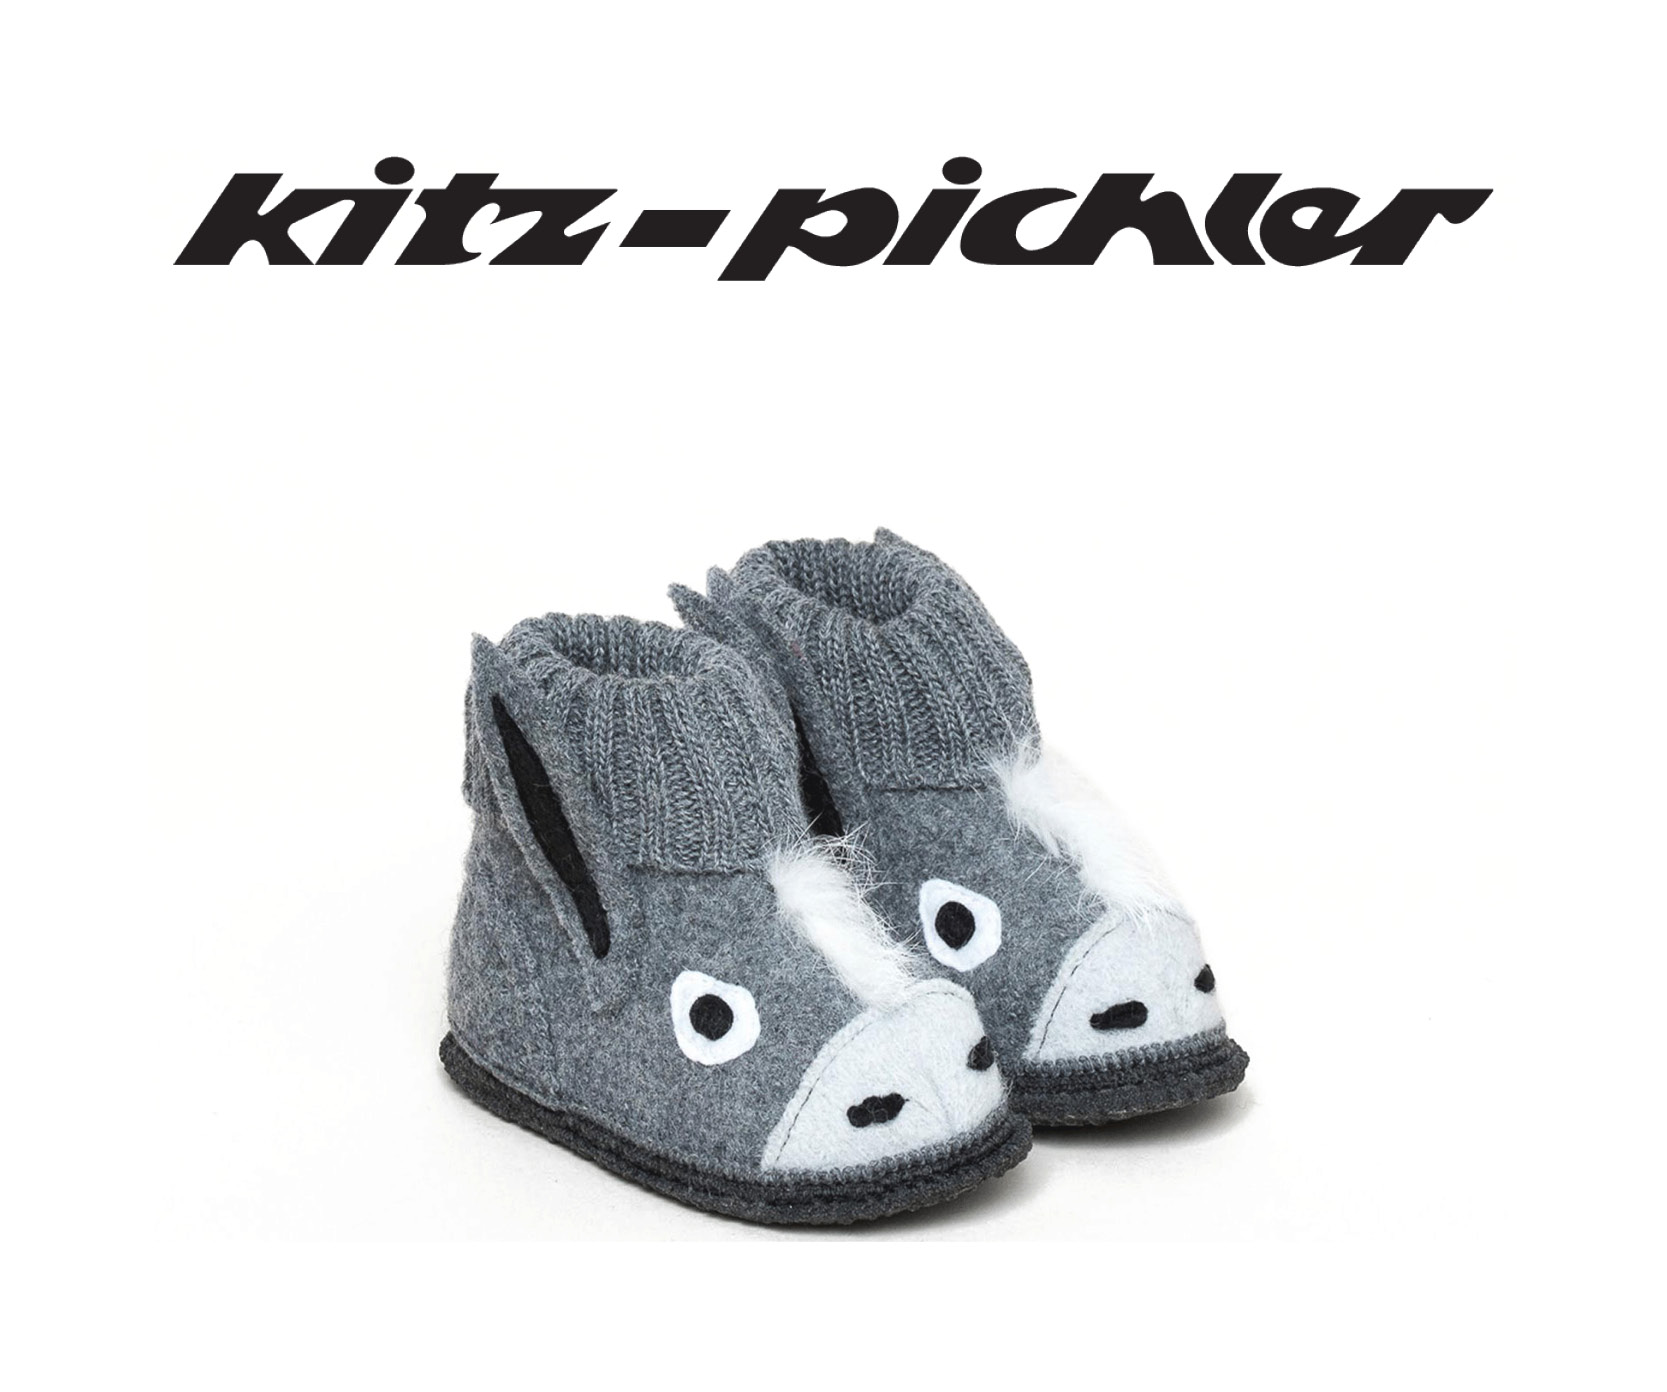 Kitz-Pichler Brand Teaser